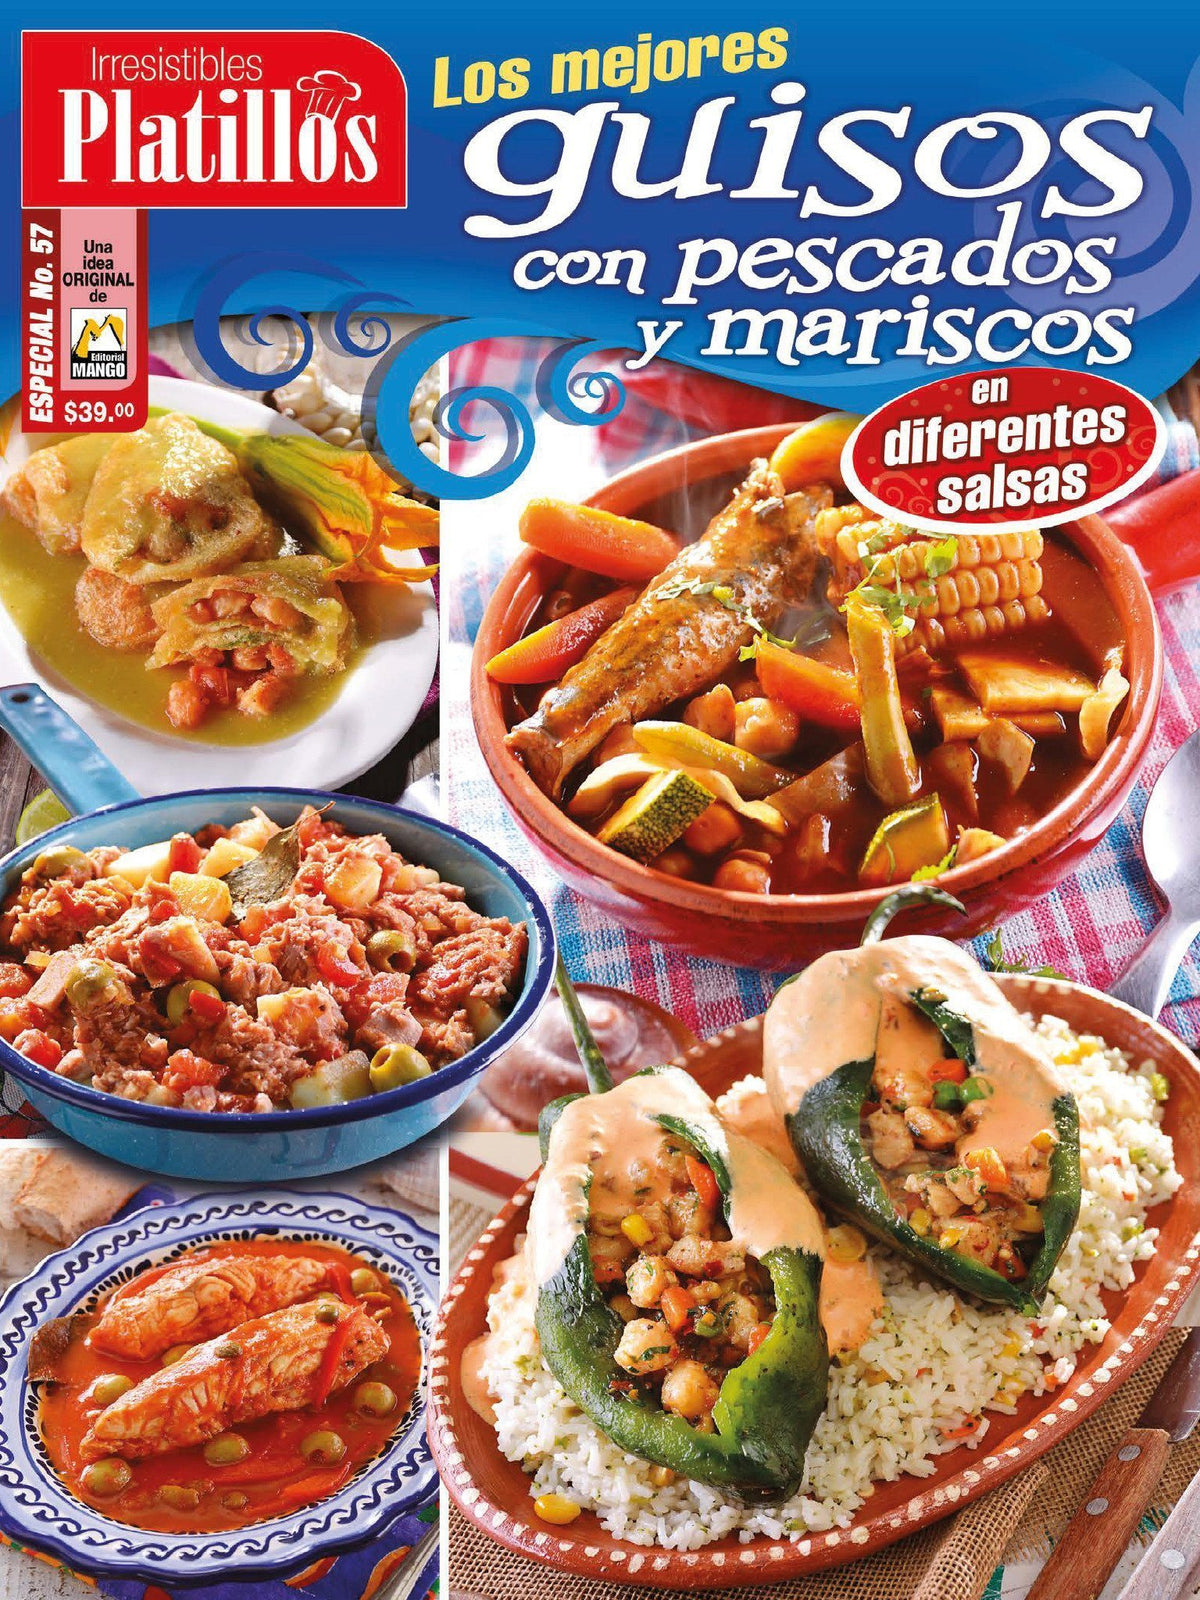 Irresistibles Platillos Especial 57 - Los mejores guisos con pescados y mariscos en diferentes salsas - Formato Digital - ToukanMango